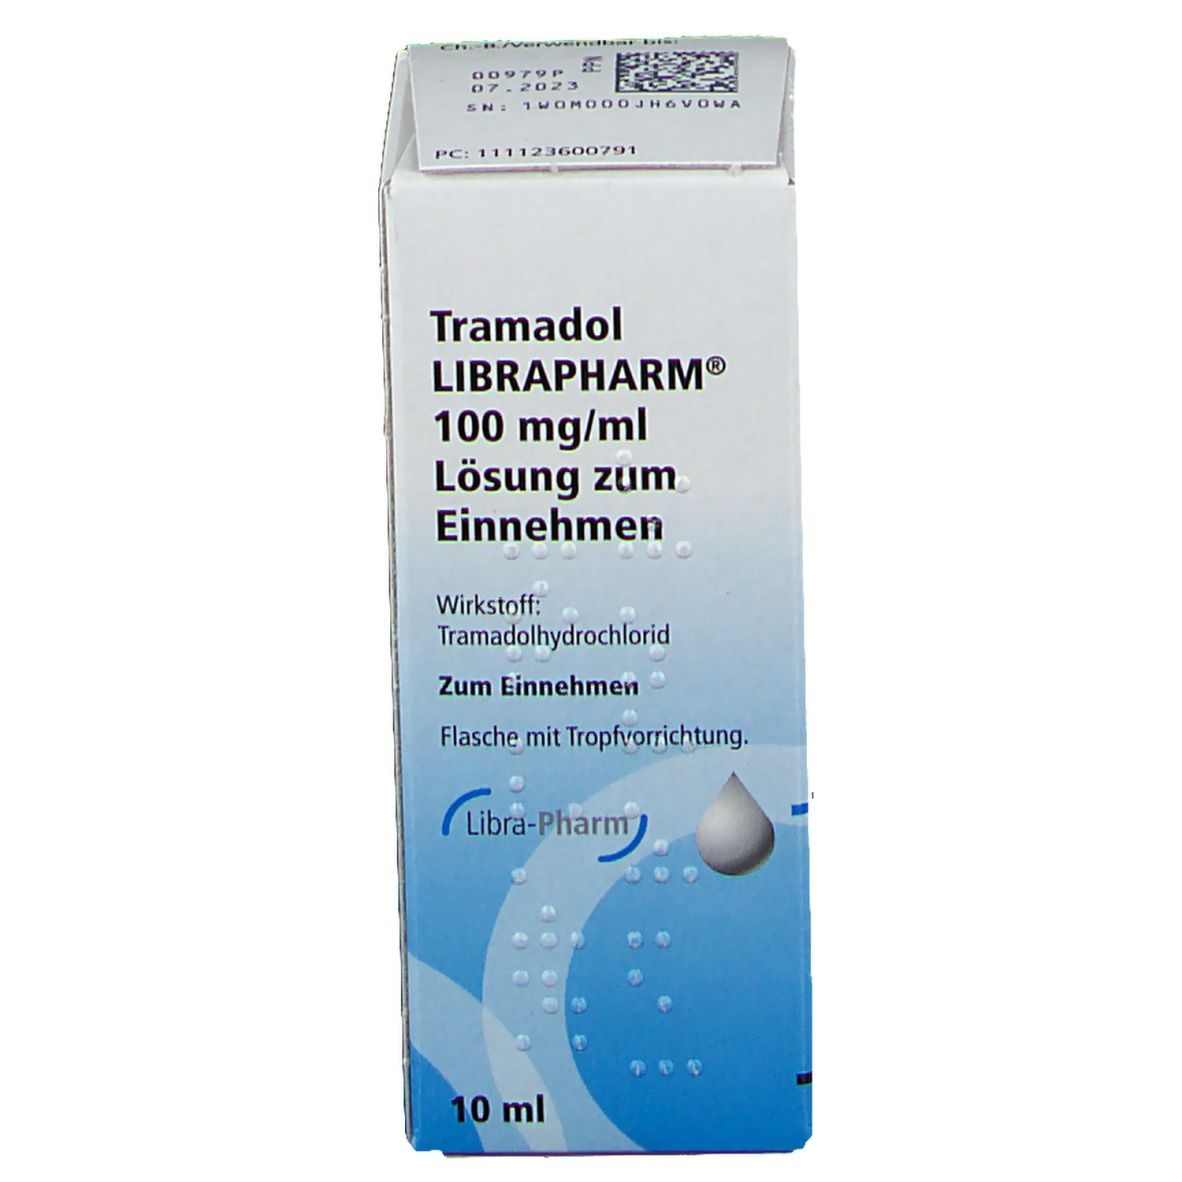 Tramadol LIBRAPHARM® 100 mg/ml